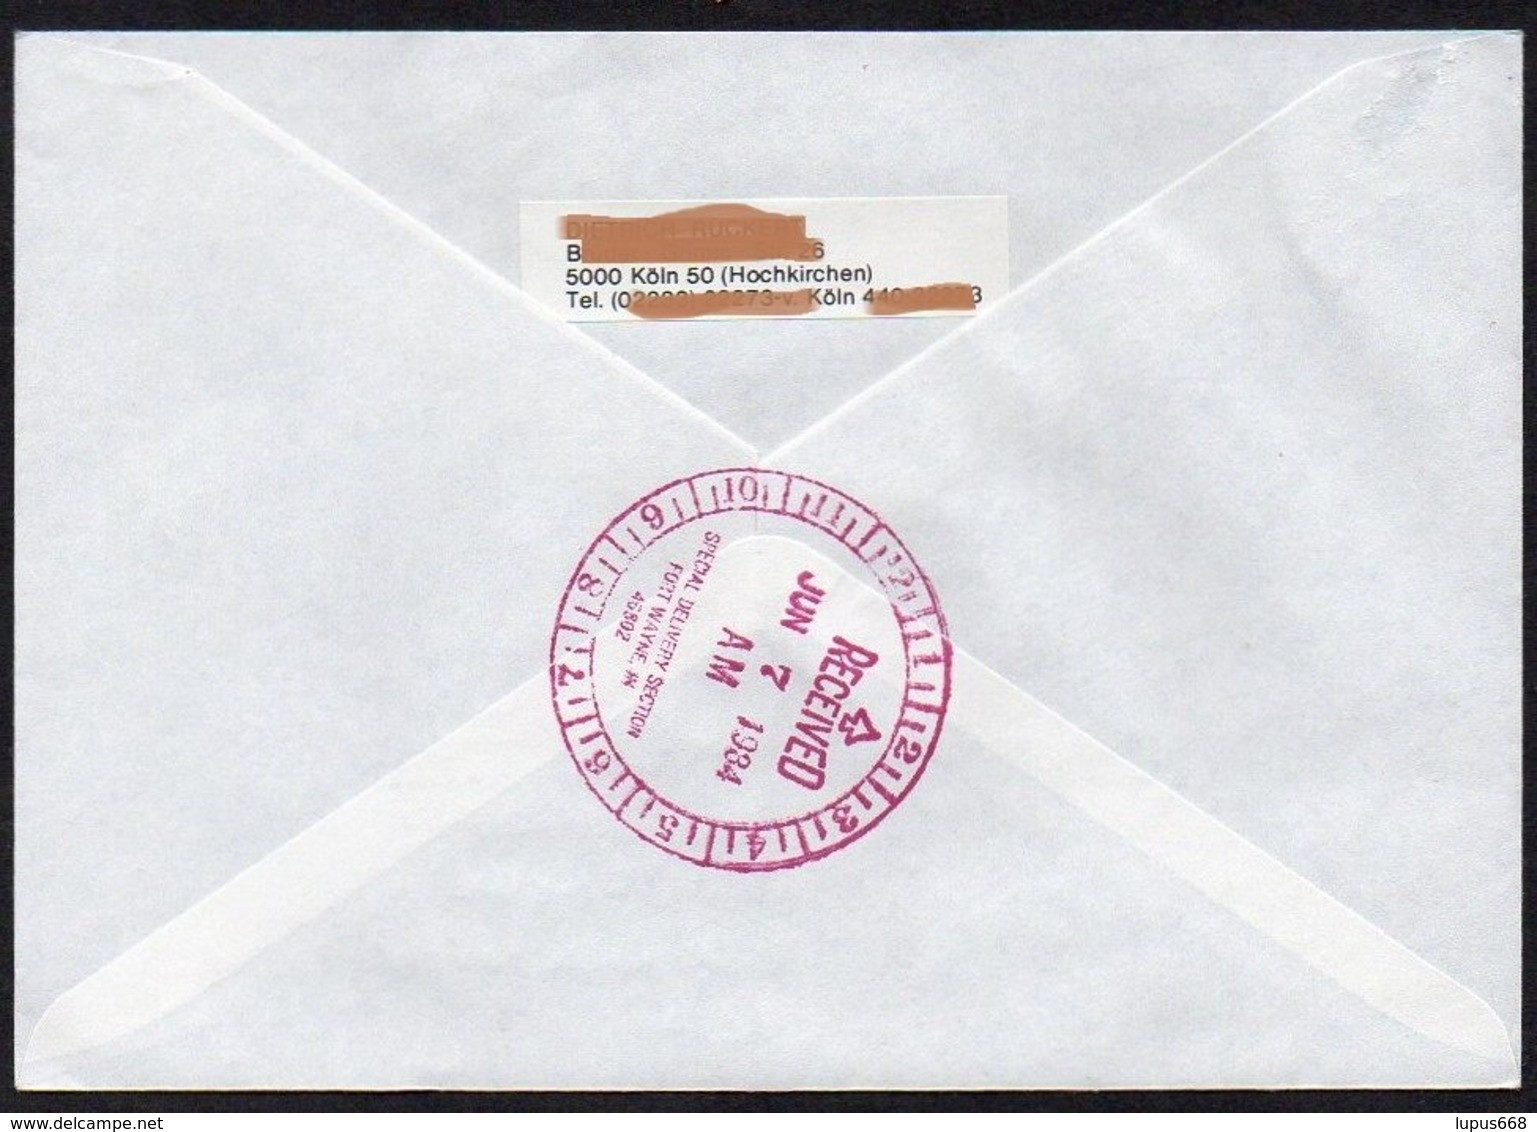 UNO - Wien  1984  MiNr. 44 (2)  Auf Express - Brief In Die U.S.A  ,  FDC; Eine Zukunft Für Flüchtlinge - Cartas & Documentos